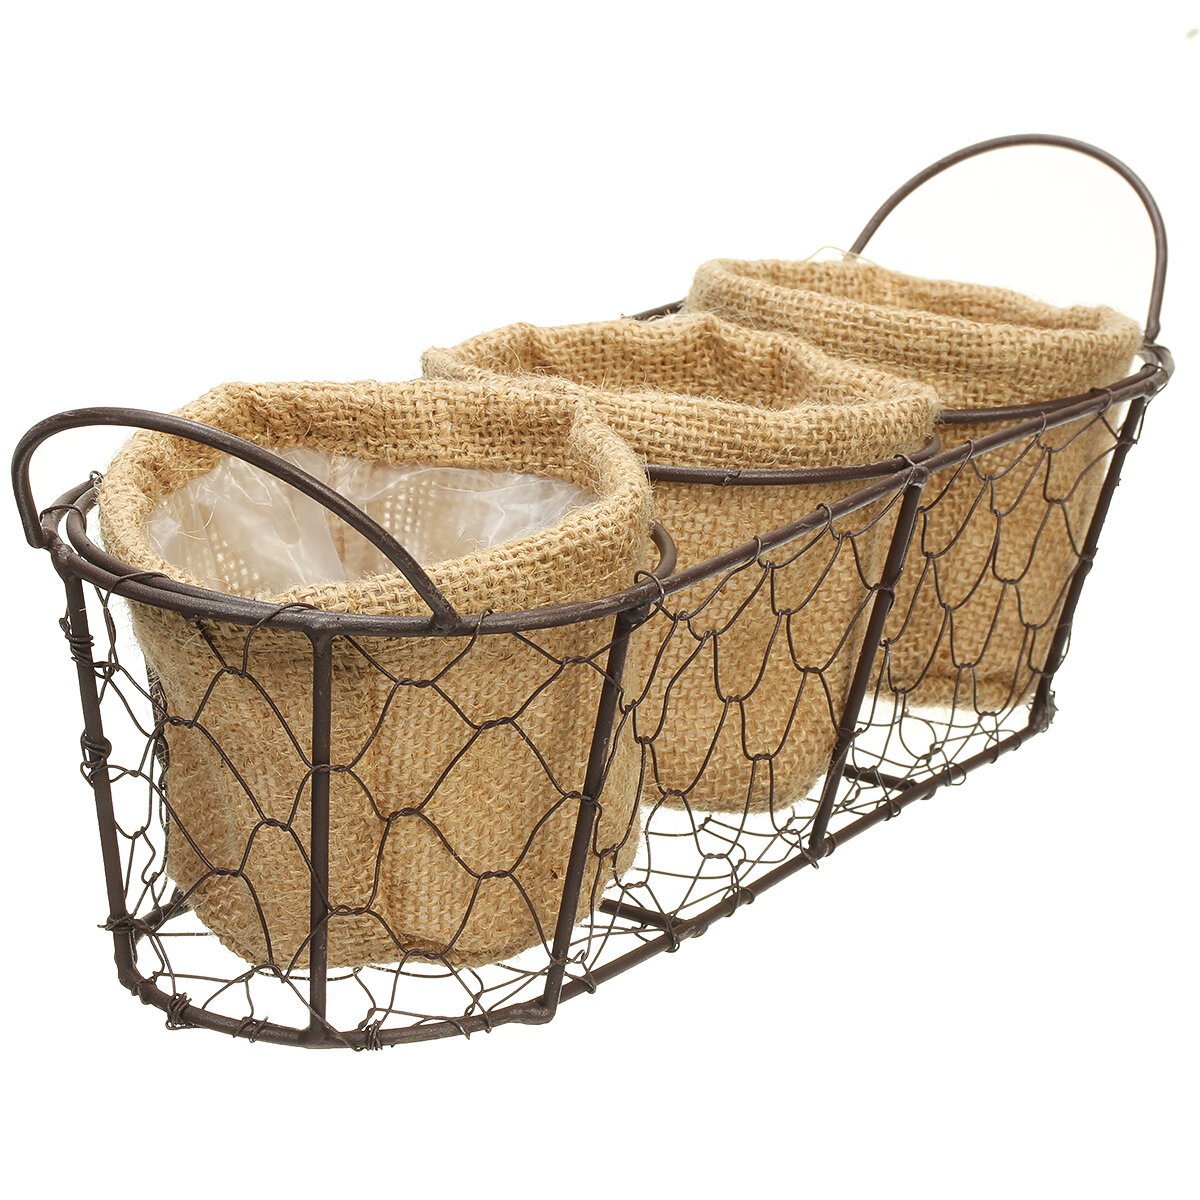 

Vintage Wire Baskets Three Baskets Rattan Hanging Flower Pot Food Baking Supplies Storage Basket